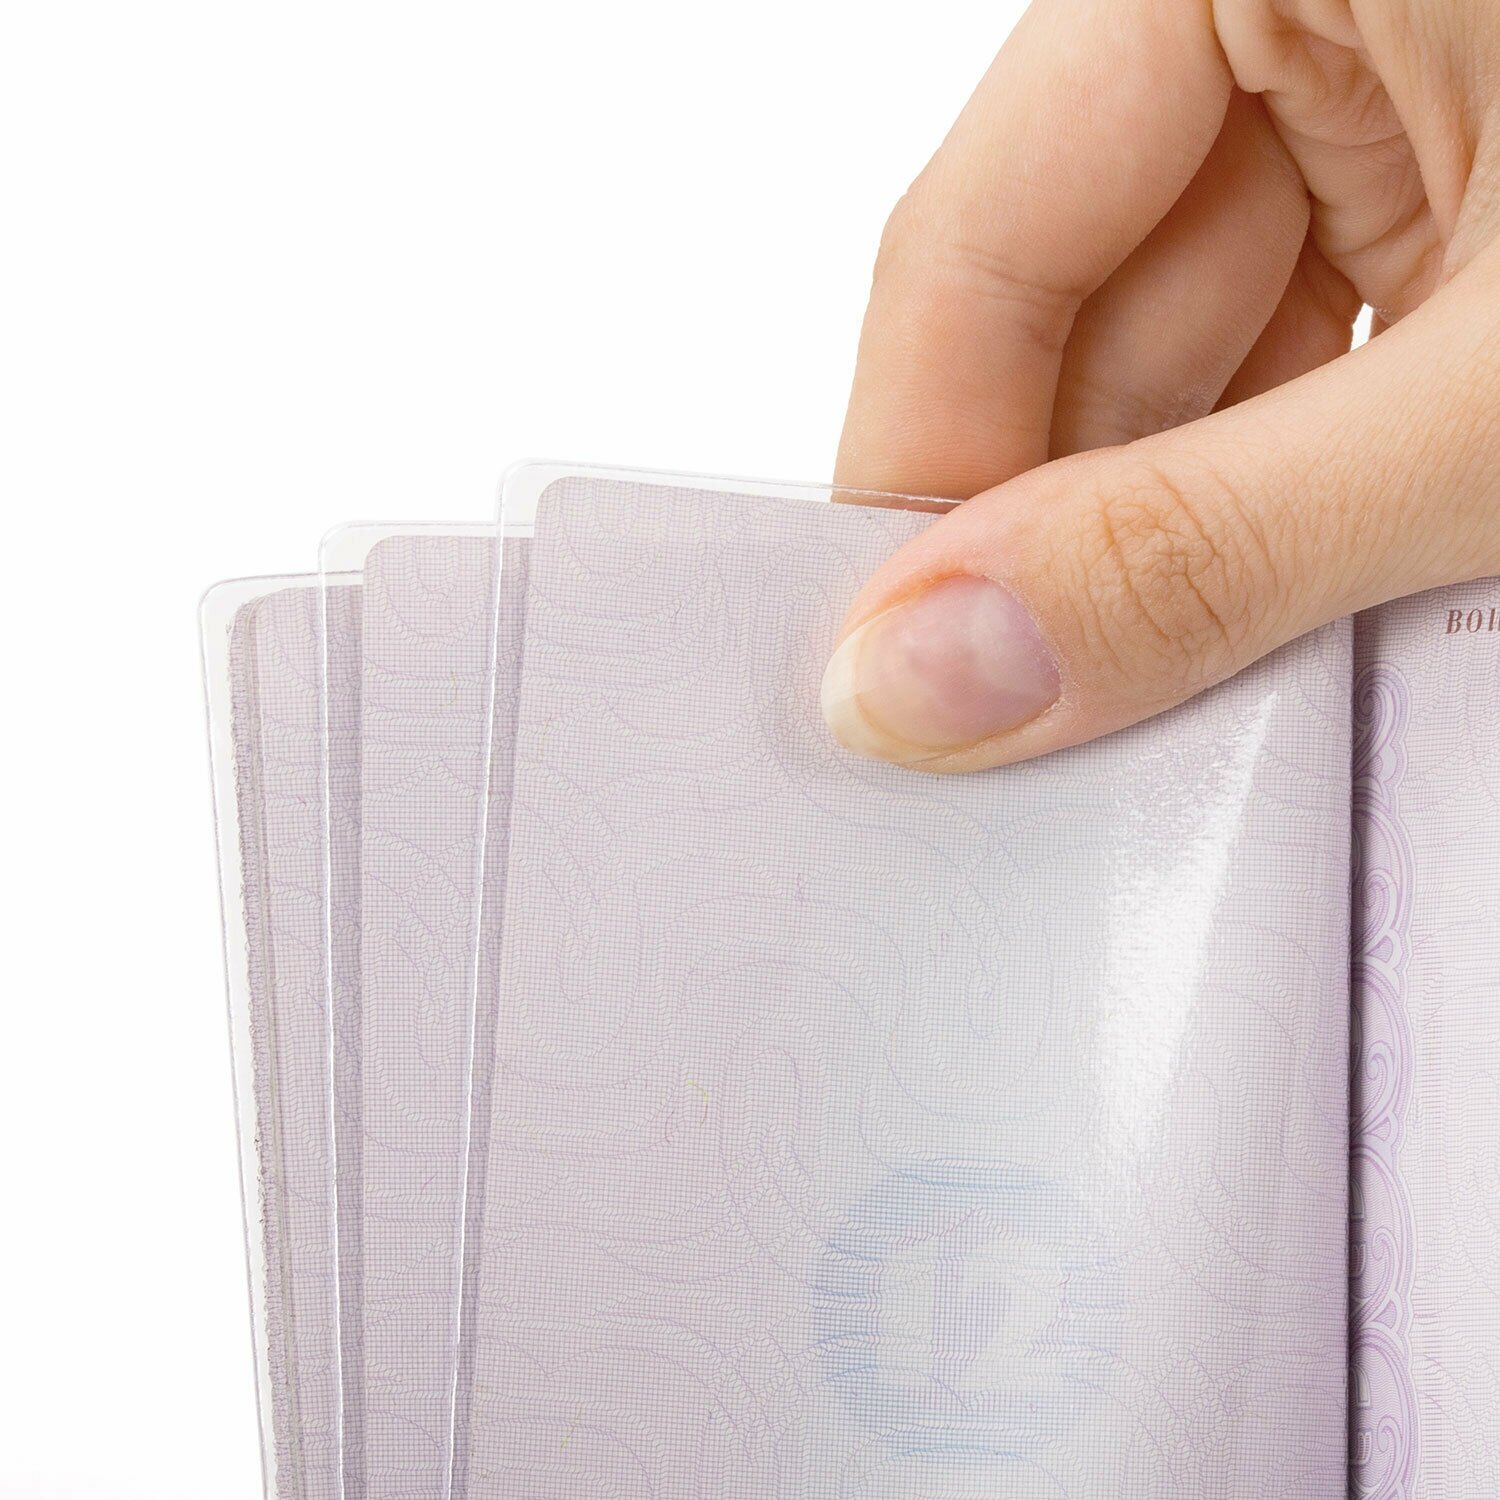 Обложка-чехол для защиты каждой страницы паспорта комплект 20 штук, ПВХ, прозрачная, STAFF, 237964, - Комплект 5 шт.(компл.)